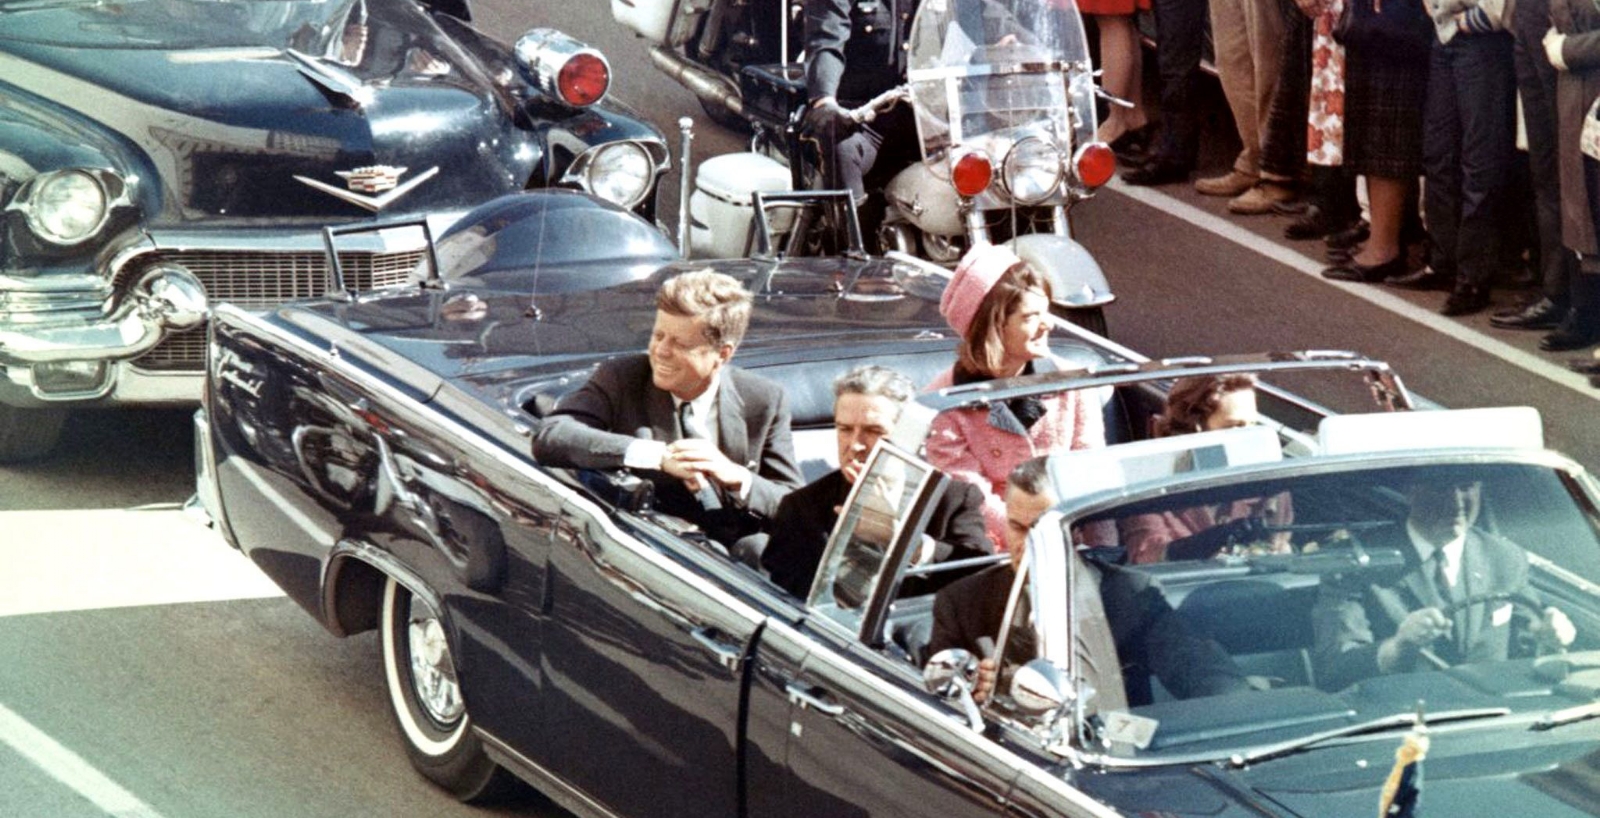 Desclasifica miles de documentos sobre el asesinato de Kennedy